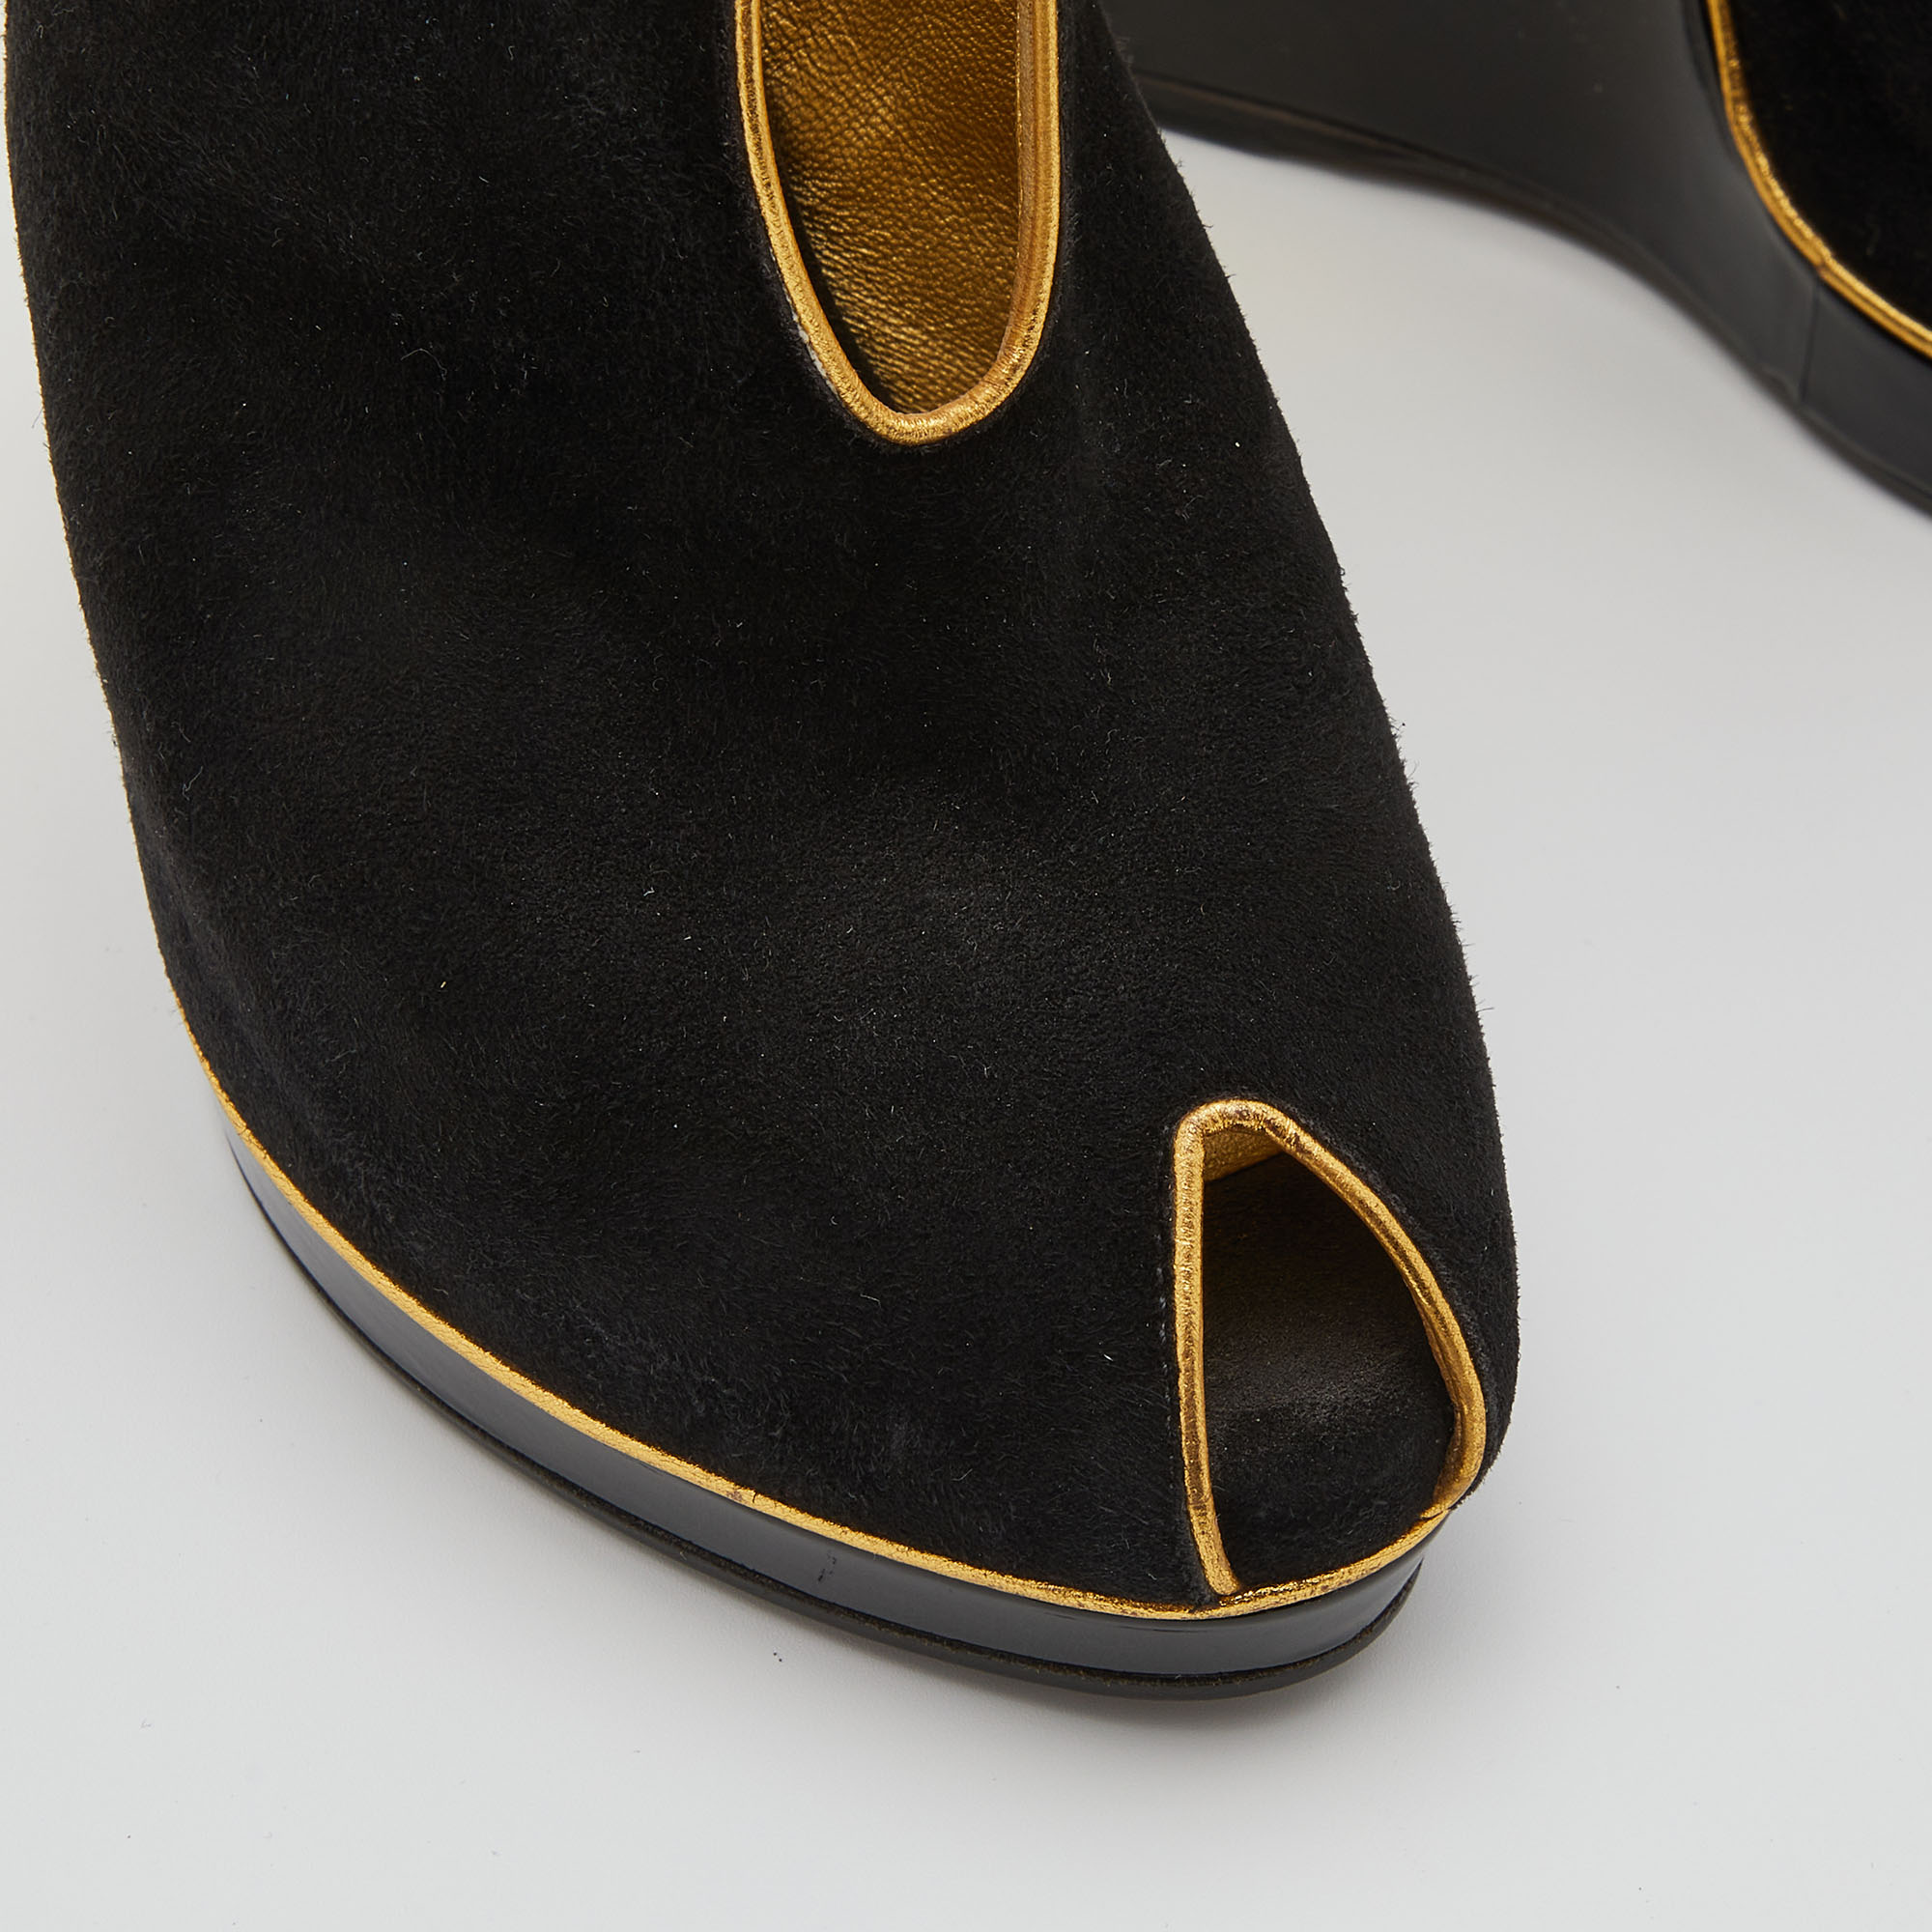 Yves Saint Laurent Black/Gold Cut-Out Suede Peep Toe Platform Wedge Pumps Size 36